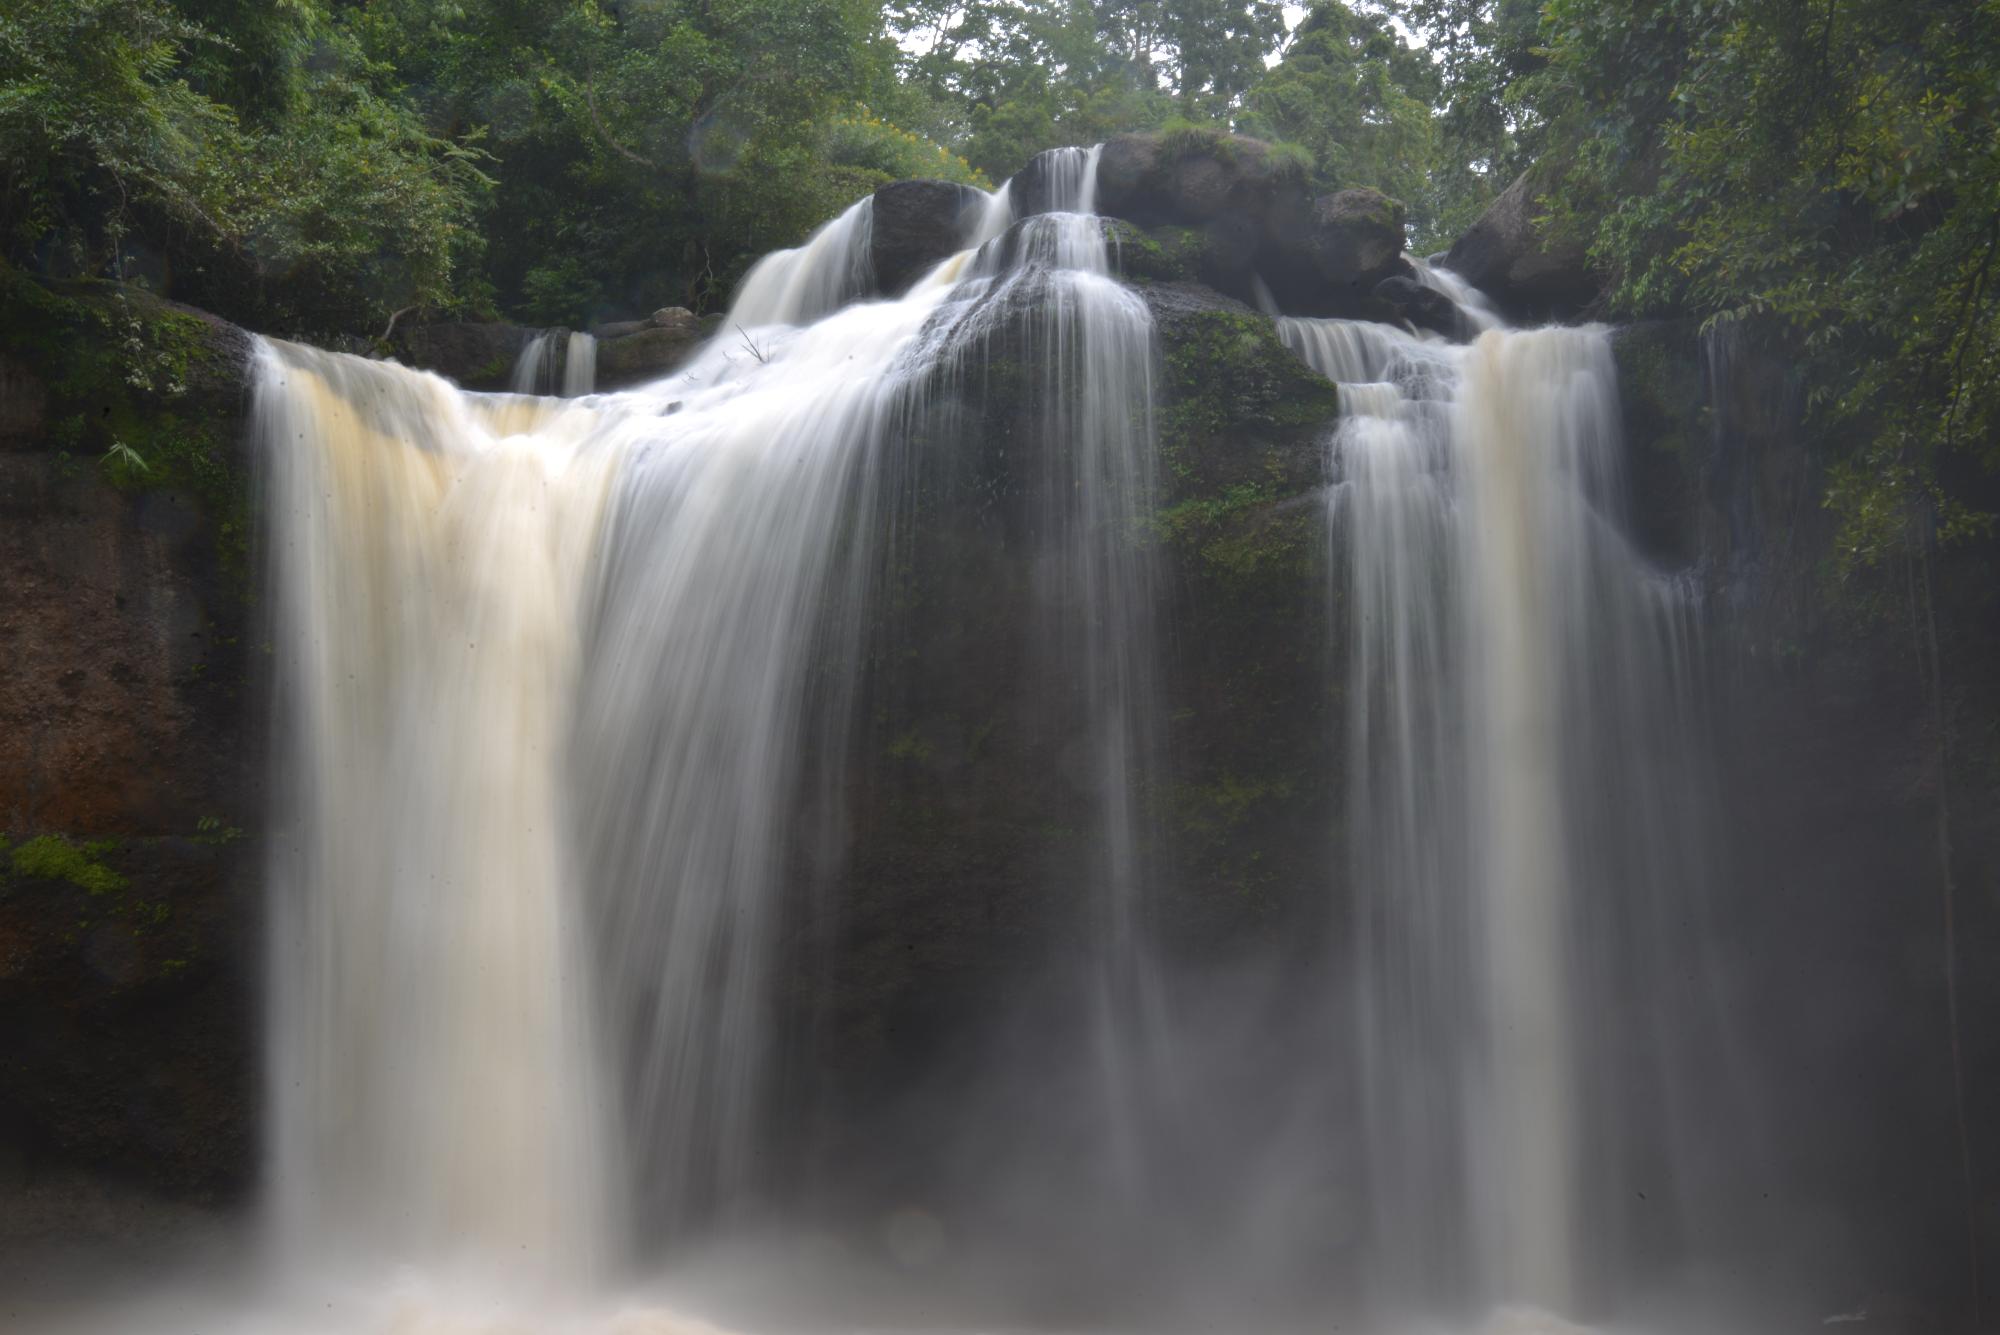 น้ำตกเหวสุวัตHaew Suwat Waterfall